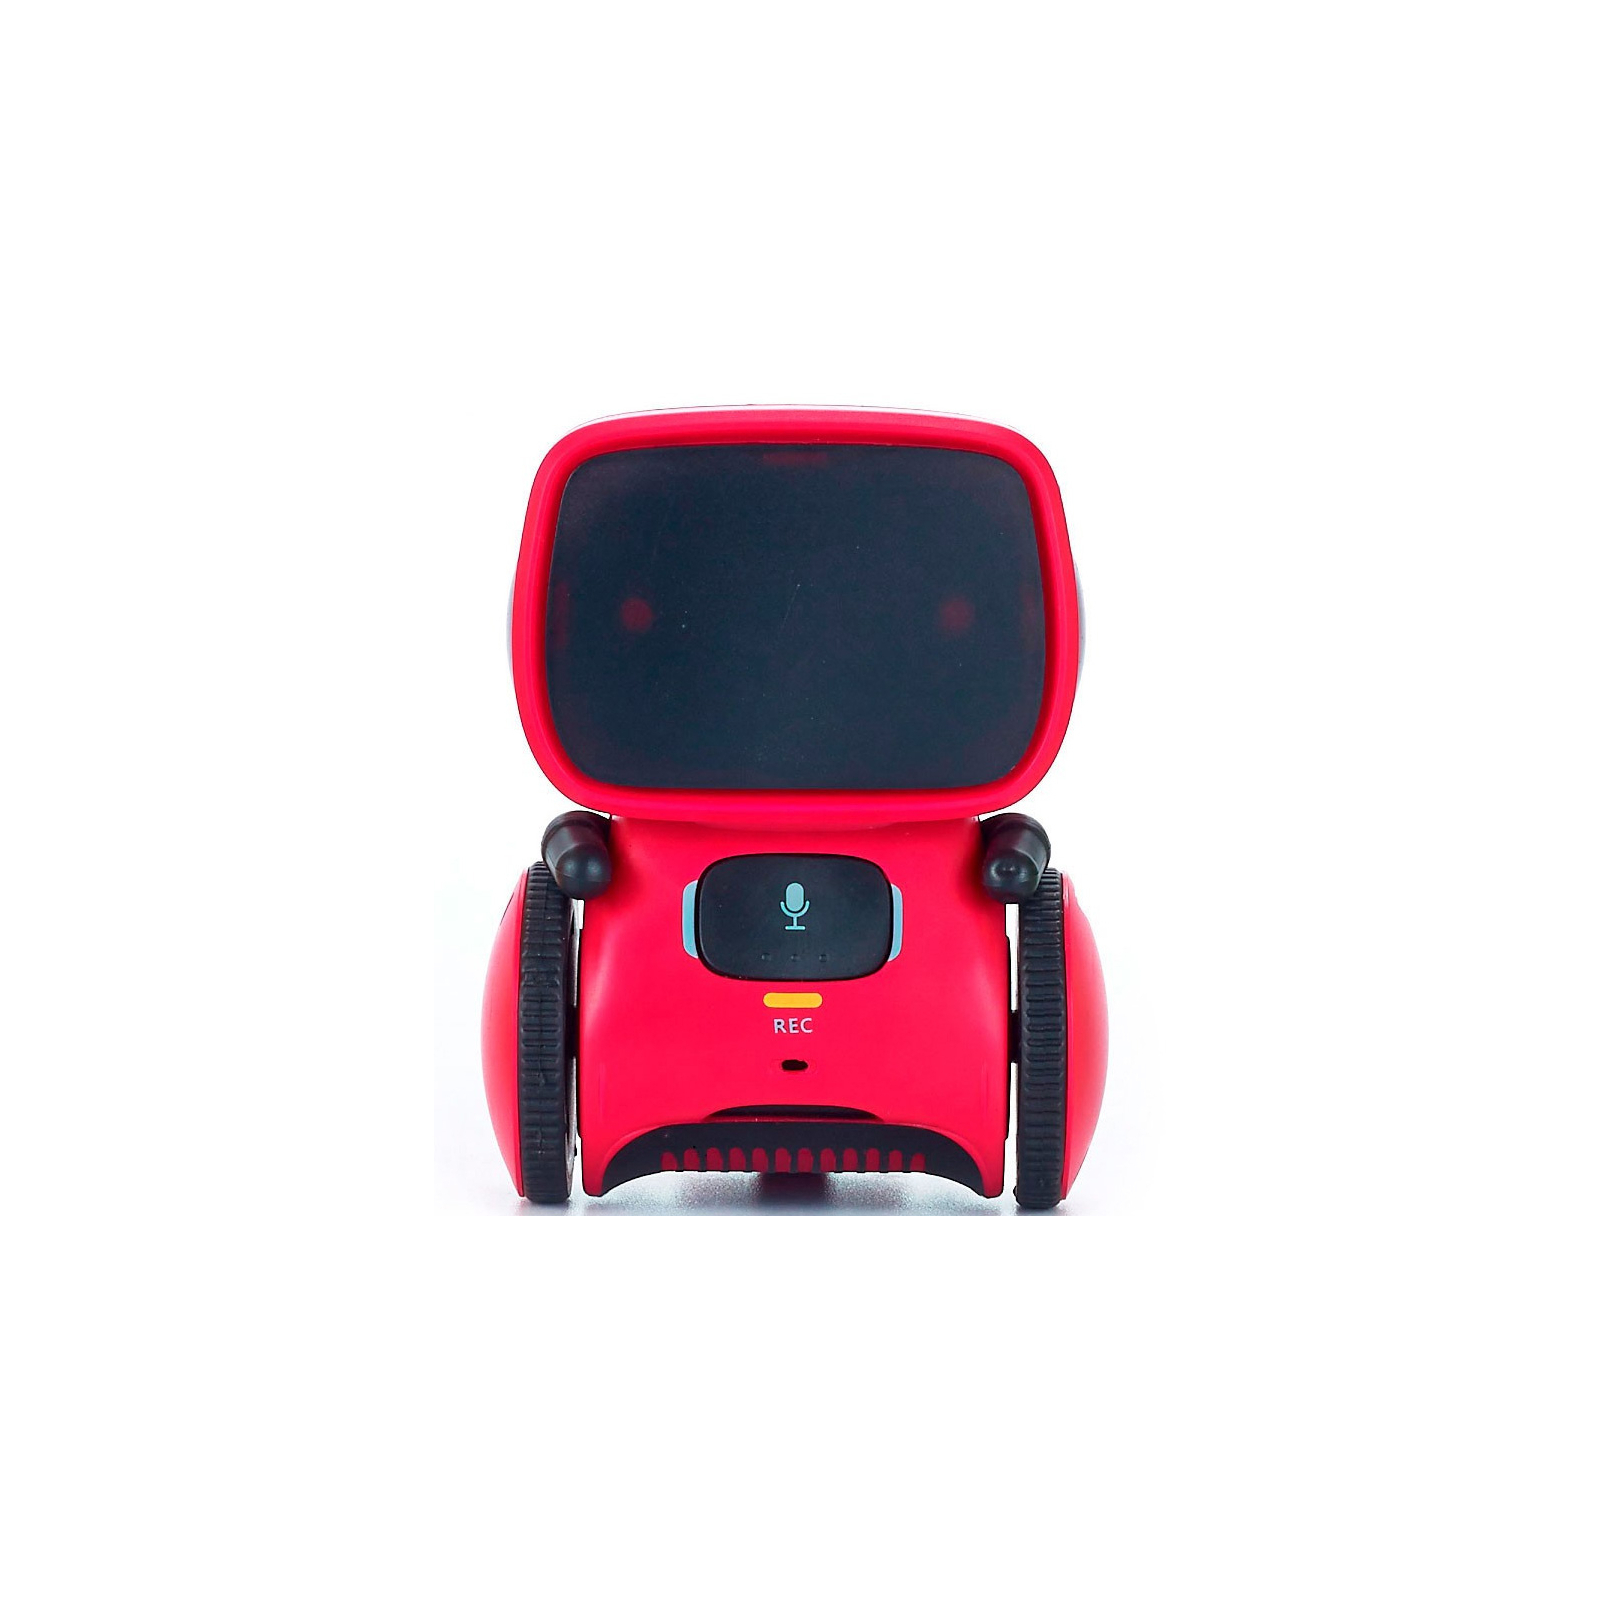 Интерактивная игрушка AT-Robot робот с голосовым управлением красный, рус. (AT001-01) изображение 2